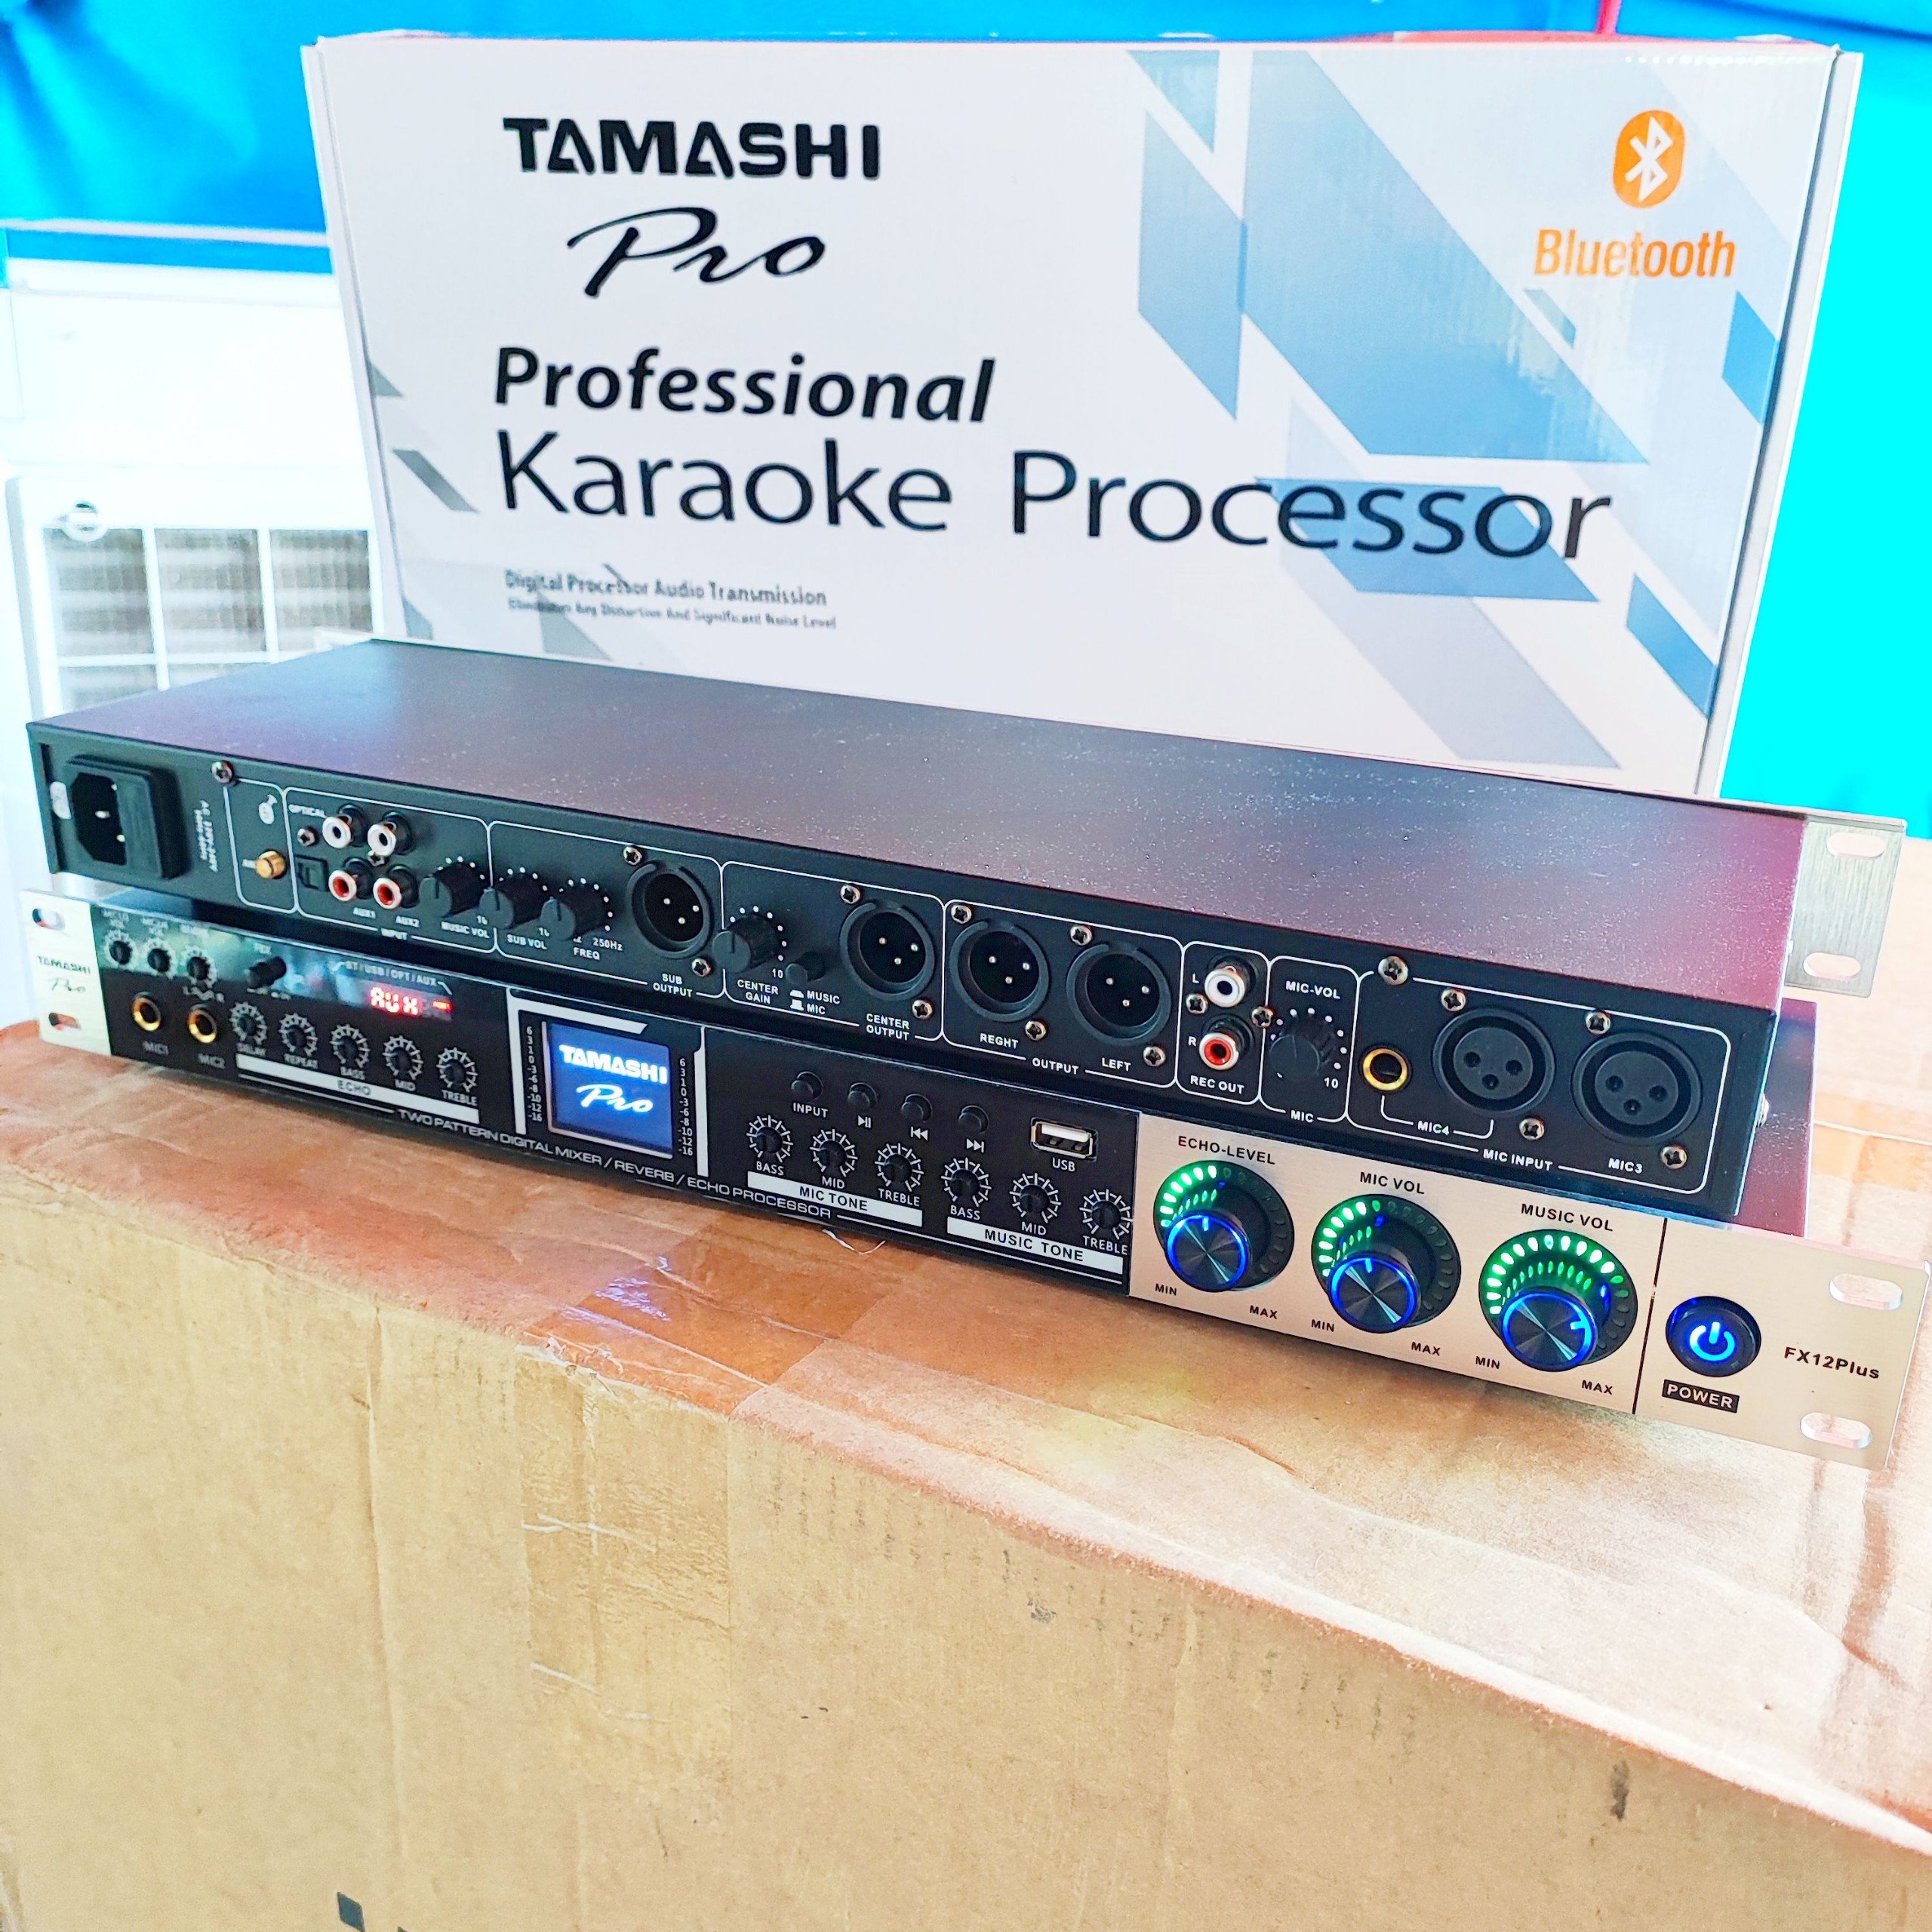 vang cơ lai số TAMASHI FX12PLUS FX 12 PLUS TAMASHI tích hợp giả mã âm thanh số blutooth cổng quang nghe